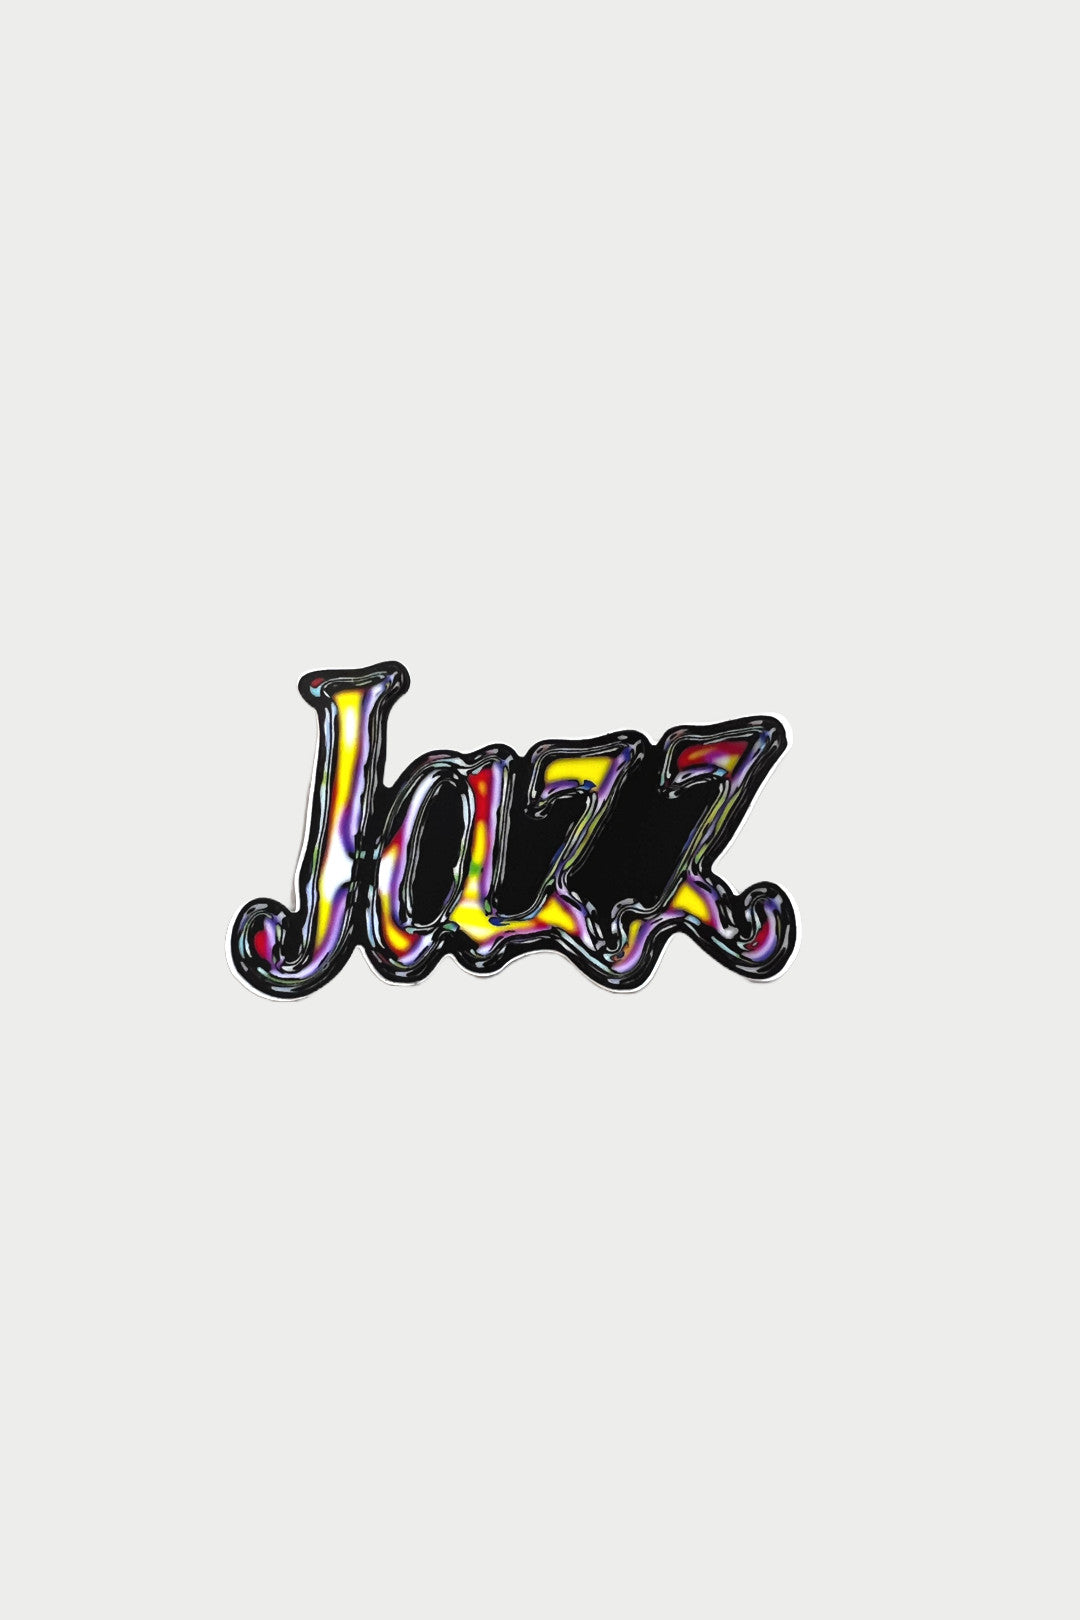 Jazz Sticker